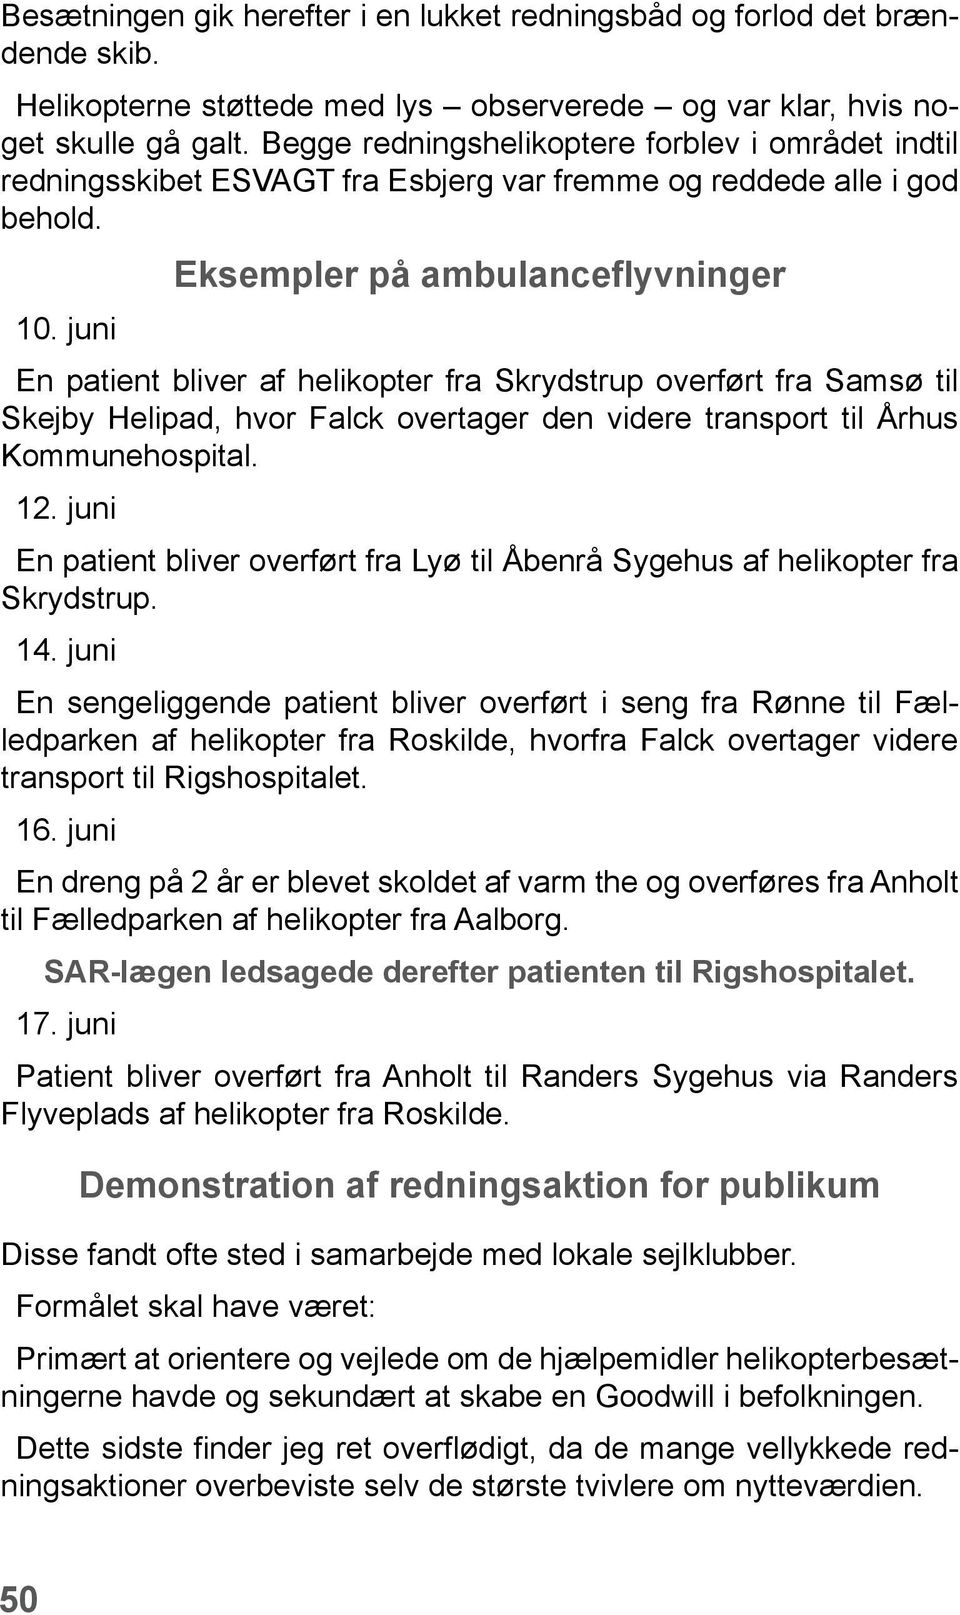 juni Eksempler på ambulanceflyvninger En patient bliver af helikopter fra Skrydstrup overført fra Samsø til Skejby Helipad, hvor Falck overtager den videre transport til Århus Kommunehospital. 12.